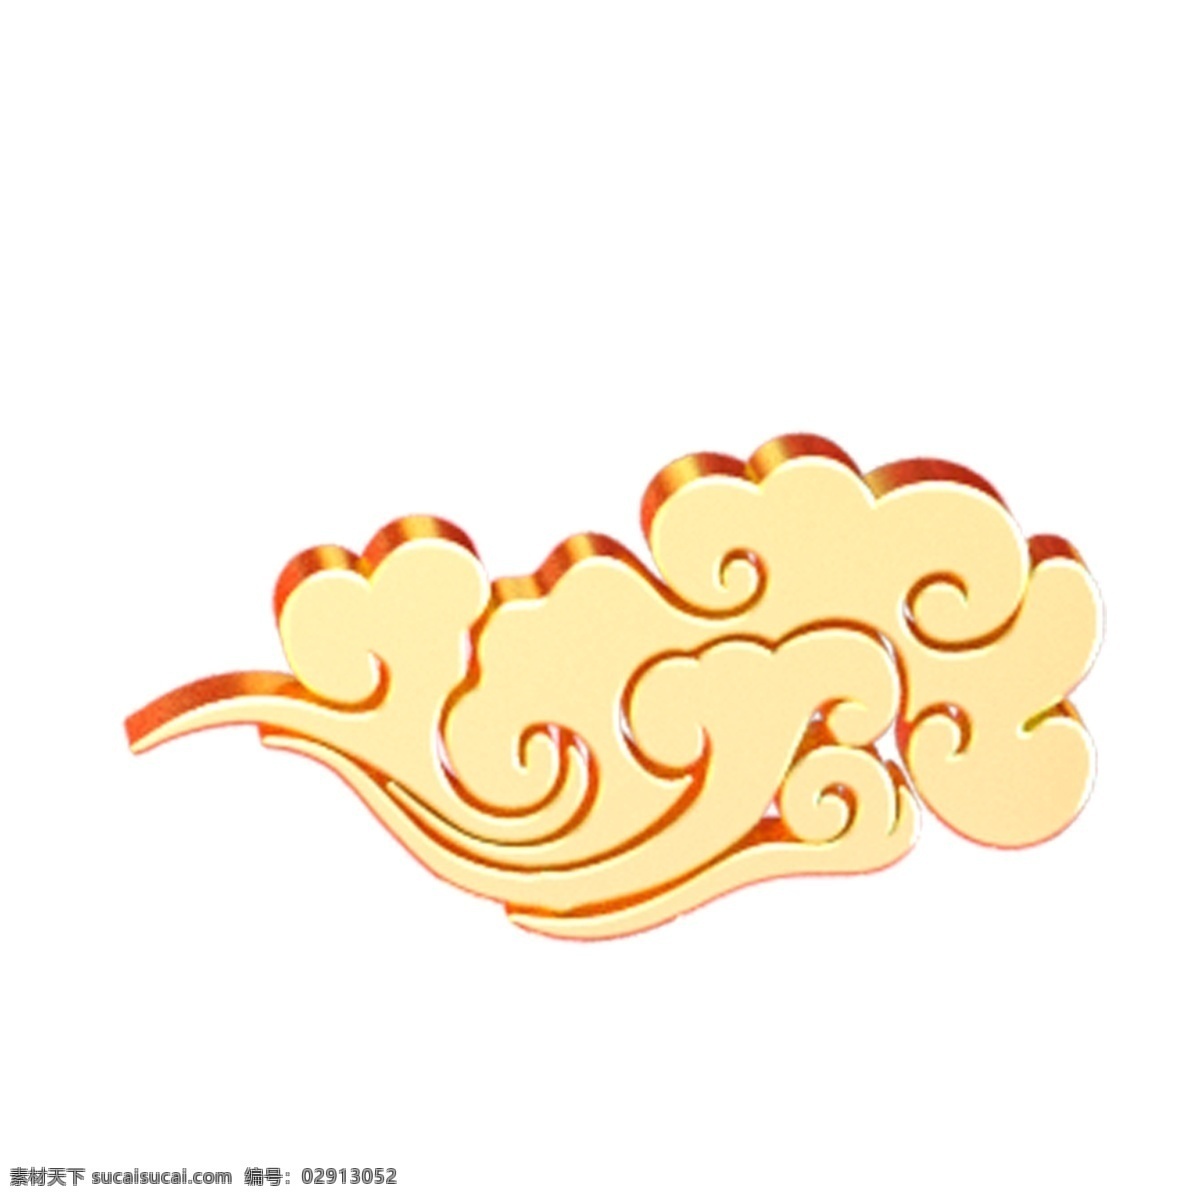 卡通 黄色 祥云 免 抠 图 中国风 吉祥的云 云朵 传统中国风 卡通祥云 飞翔的云朵 免抠图